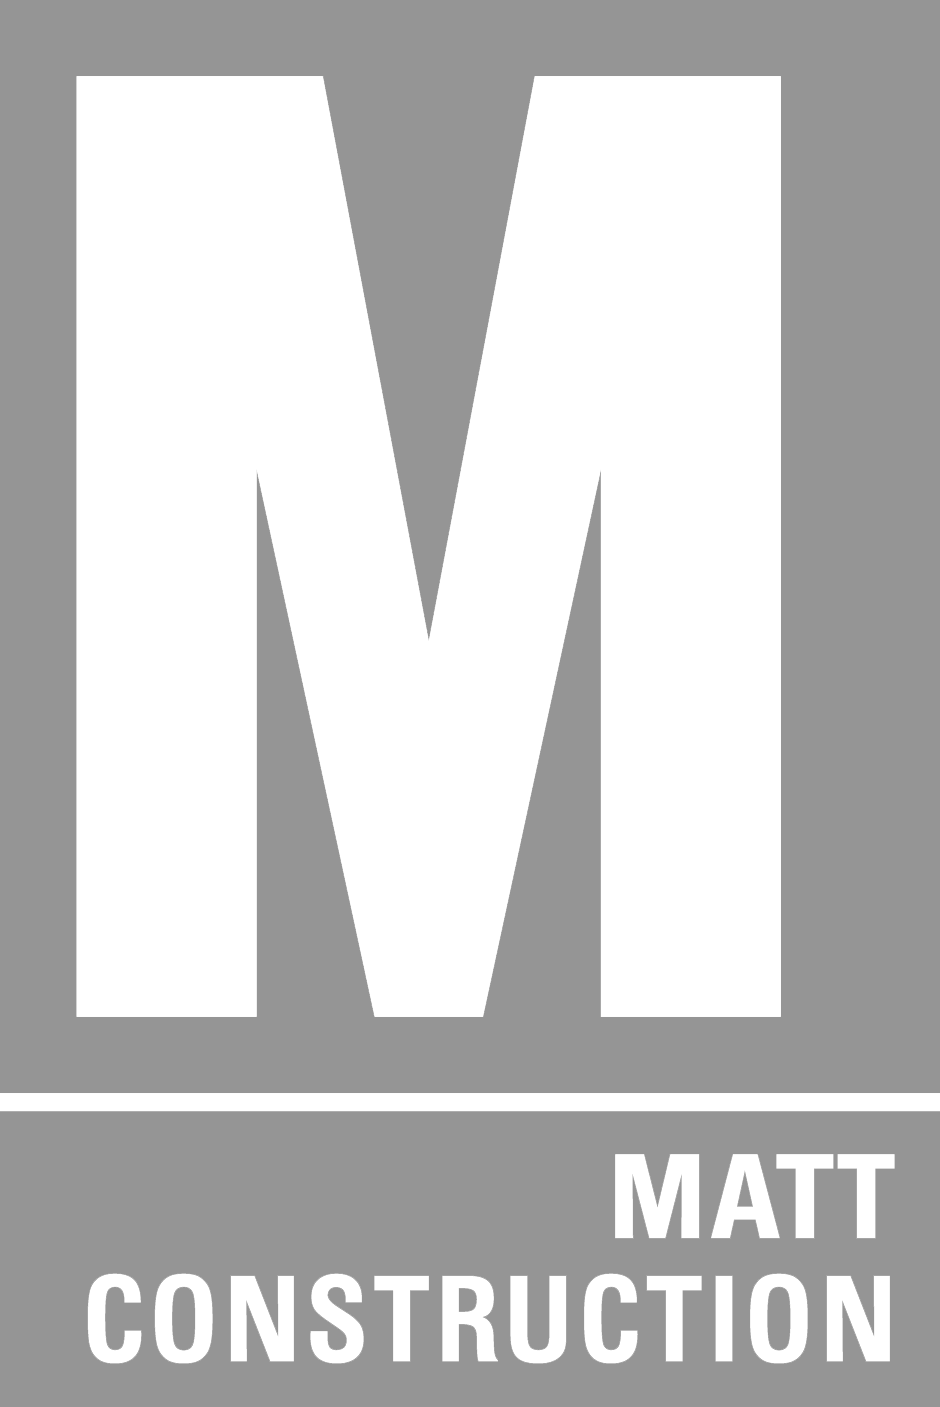 Matt Construction Logo